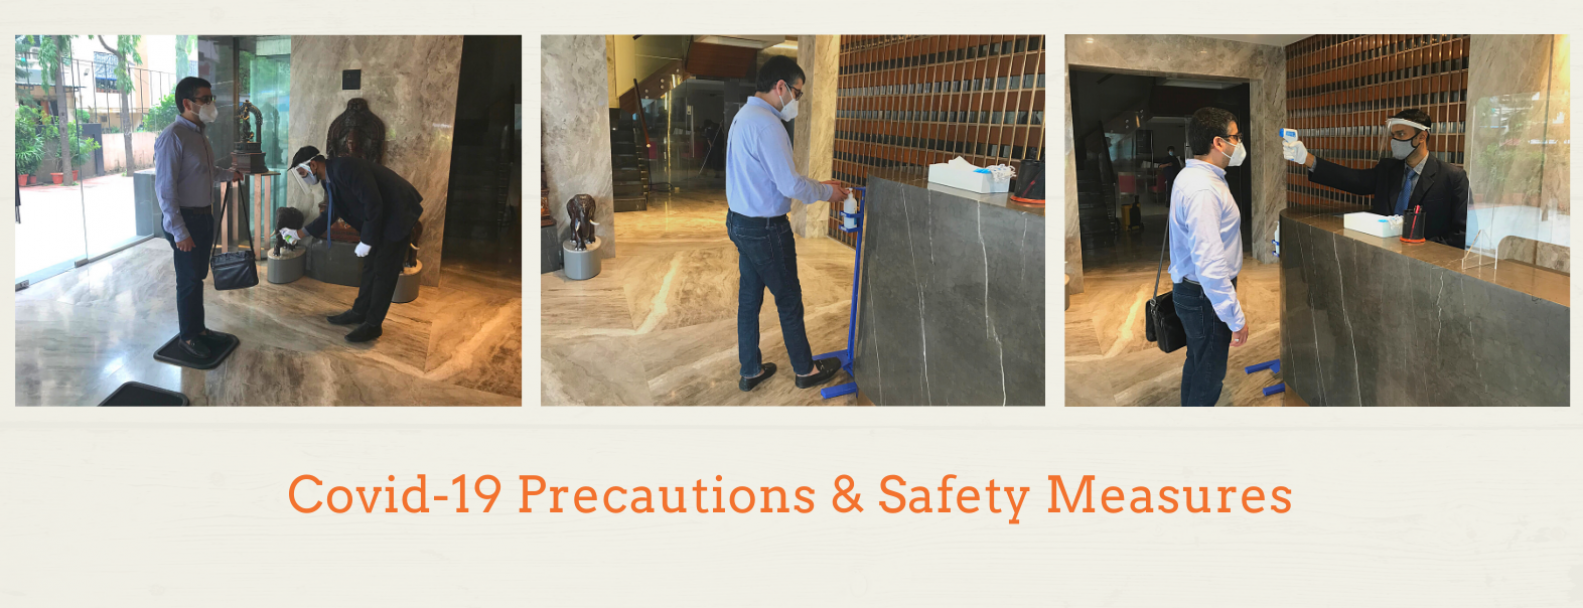 covid-19 precautions & safety-1594733816-1